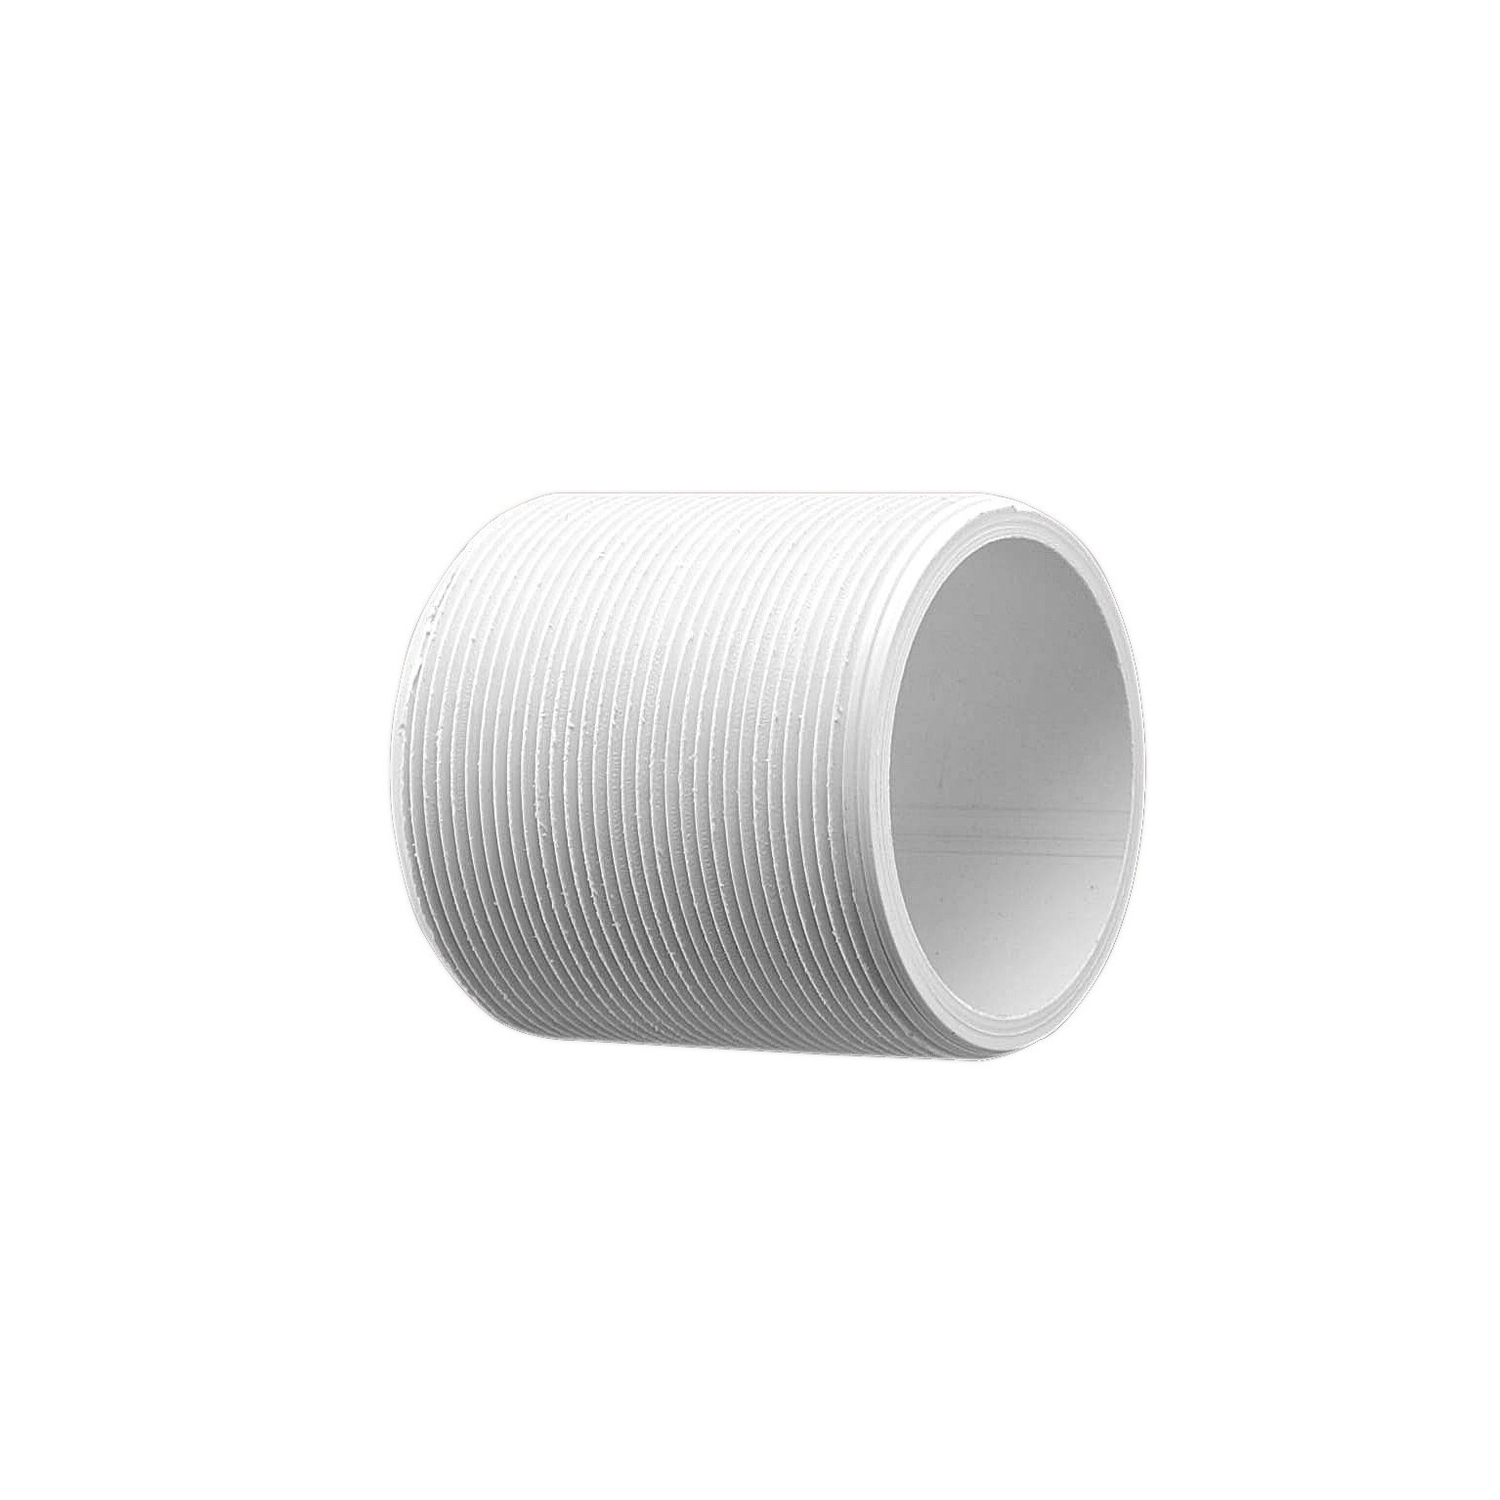 NIPPLE COND PVC SCR 40MM, Grey